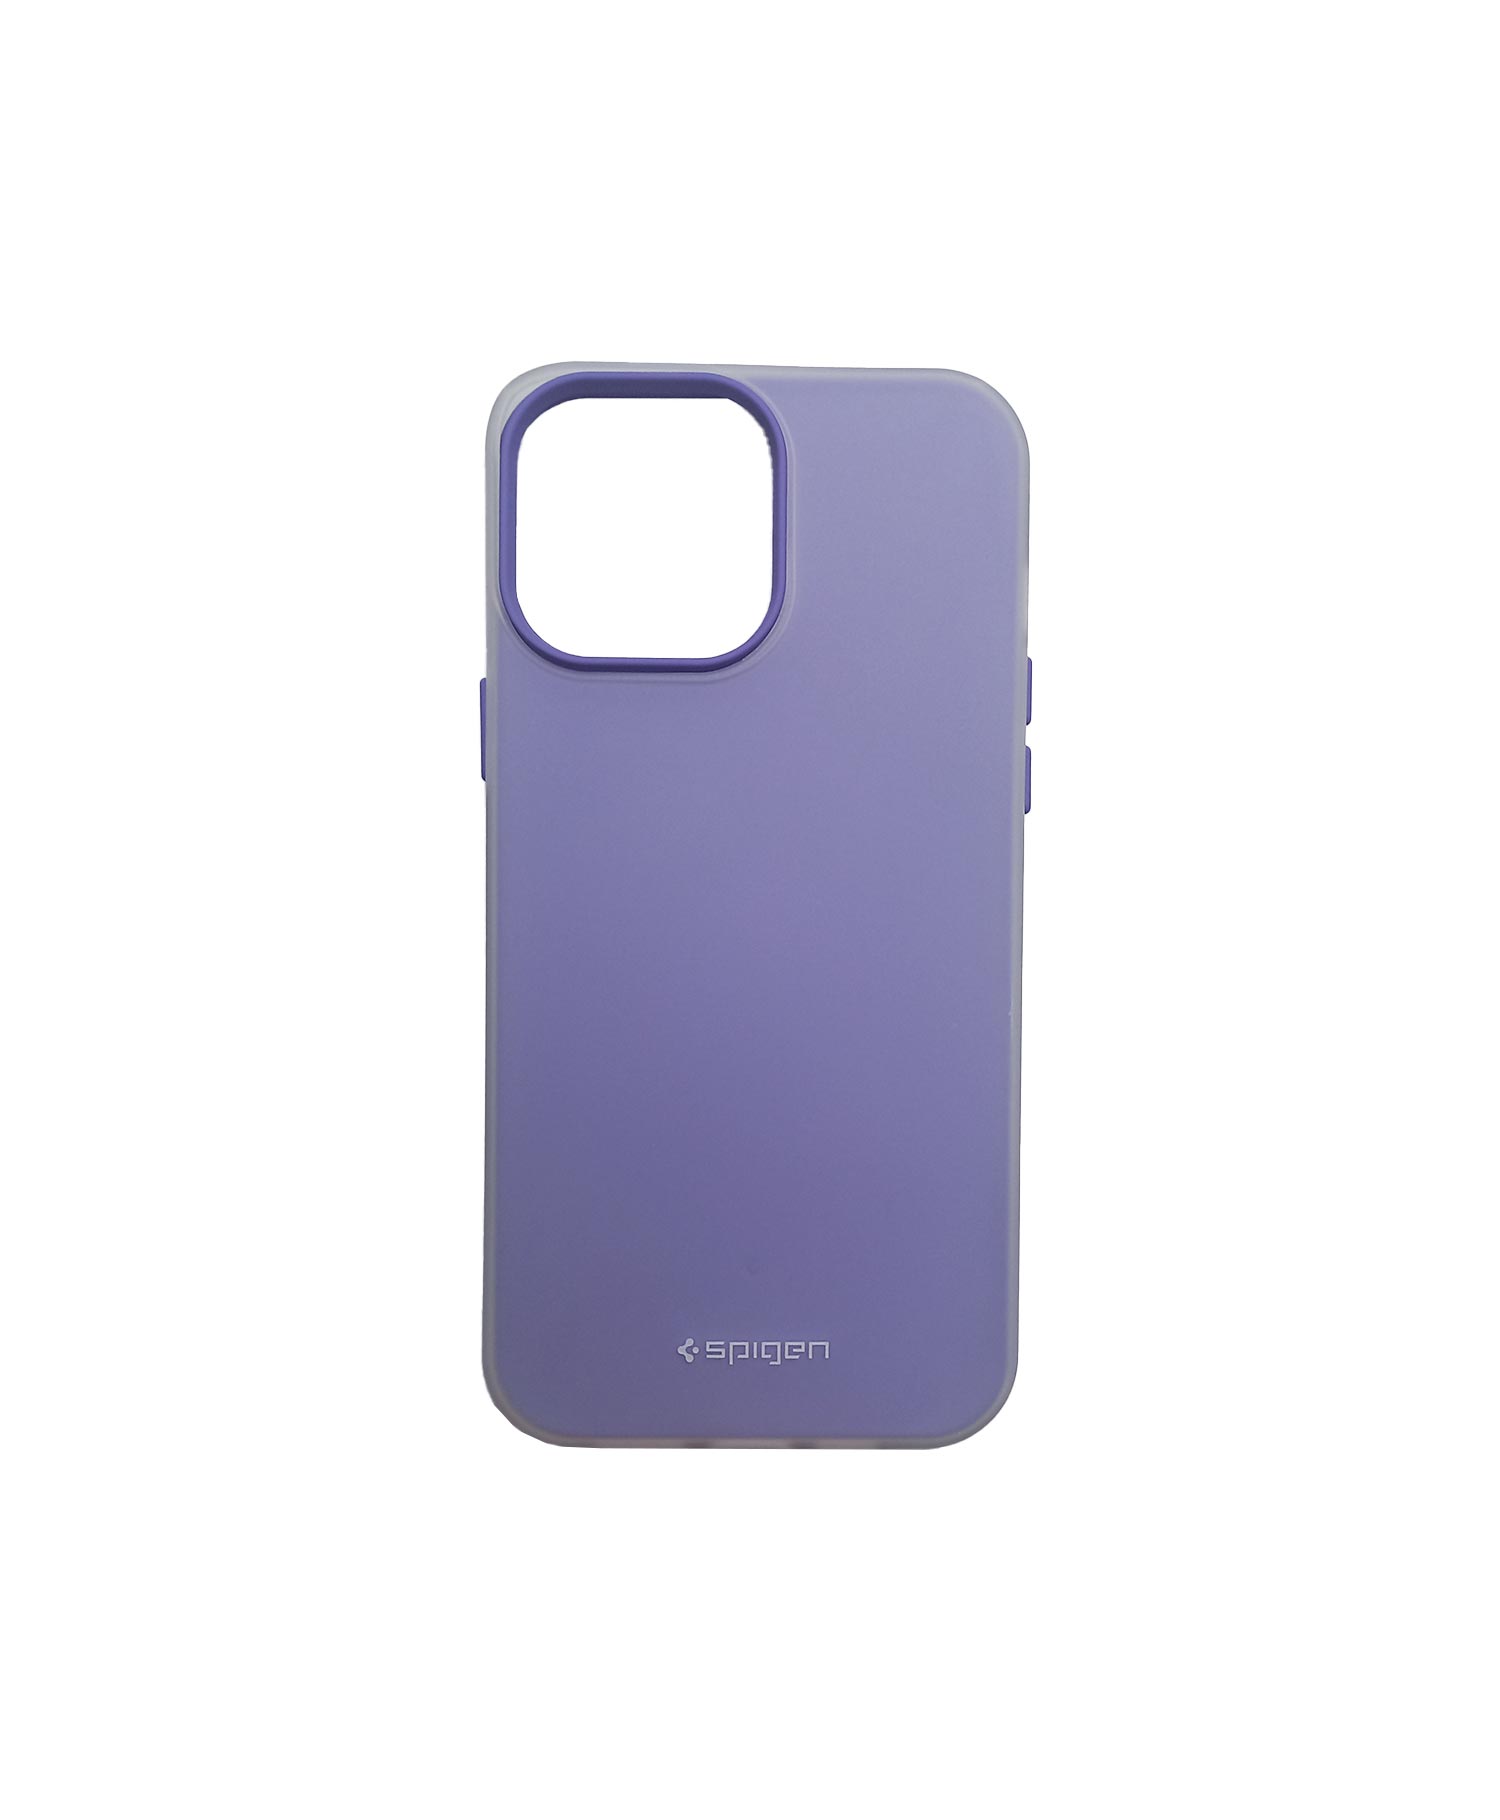 کاور اسپیگن Jelly Case گوشی موبایل آیفون Iphone 13 Pro Max